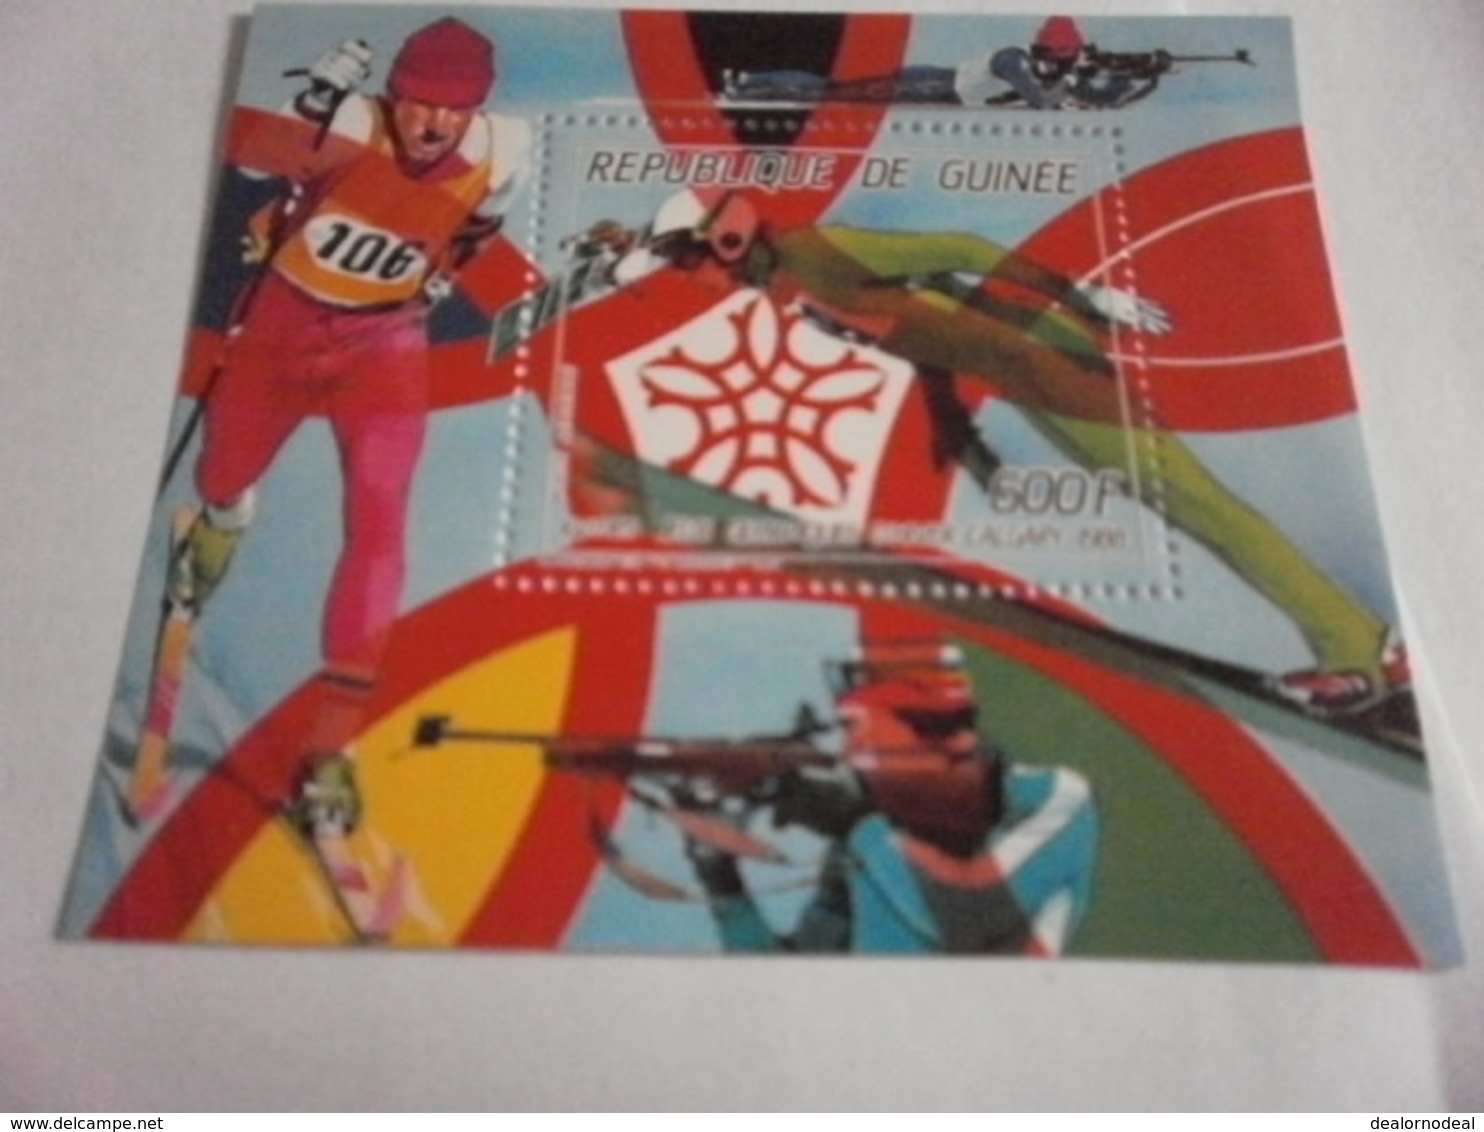 Miniature Sheet Perf Calgary 1988 Winter Olympics - Guinea (1958-...)